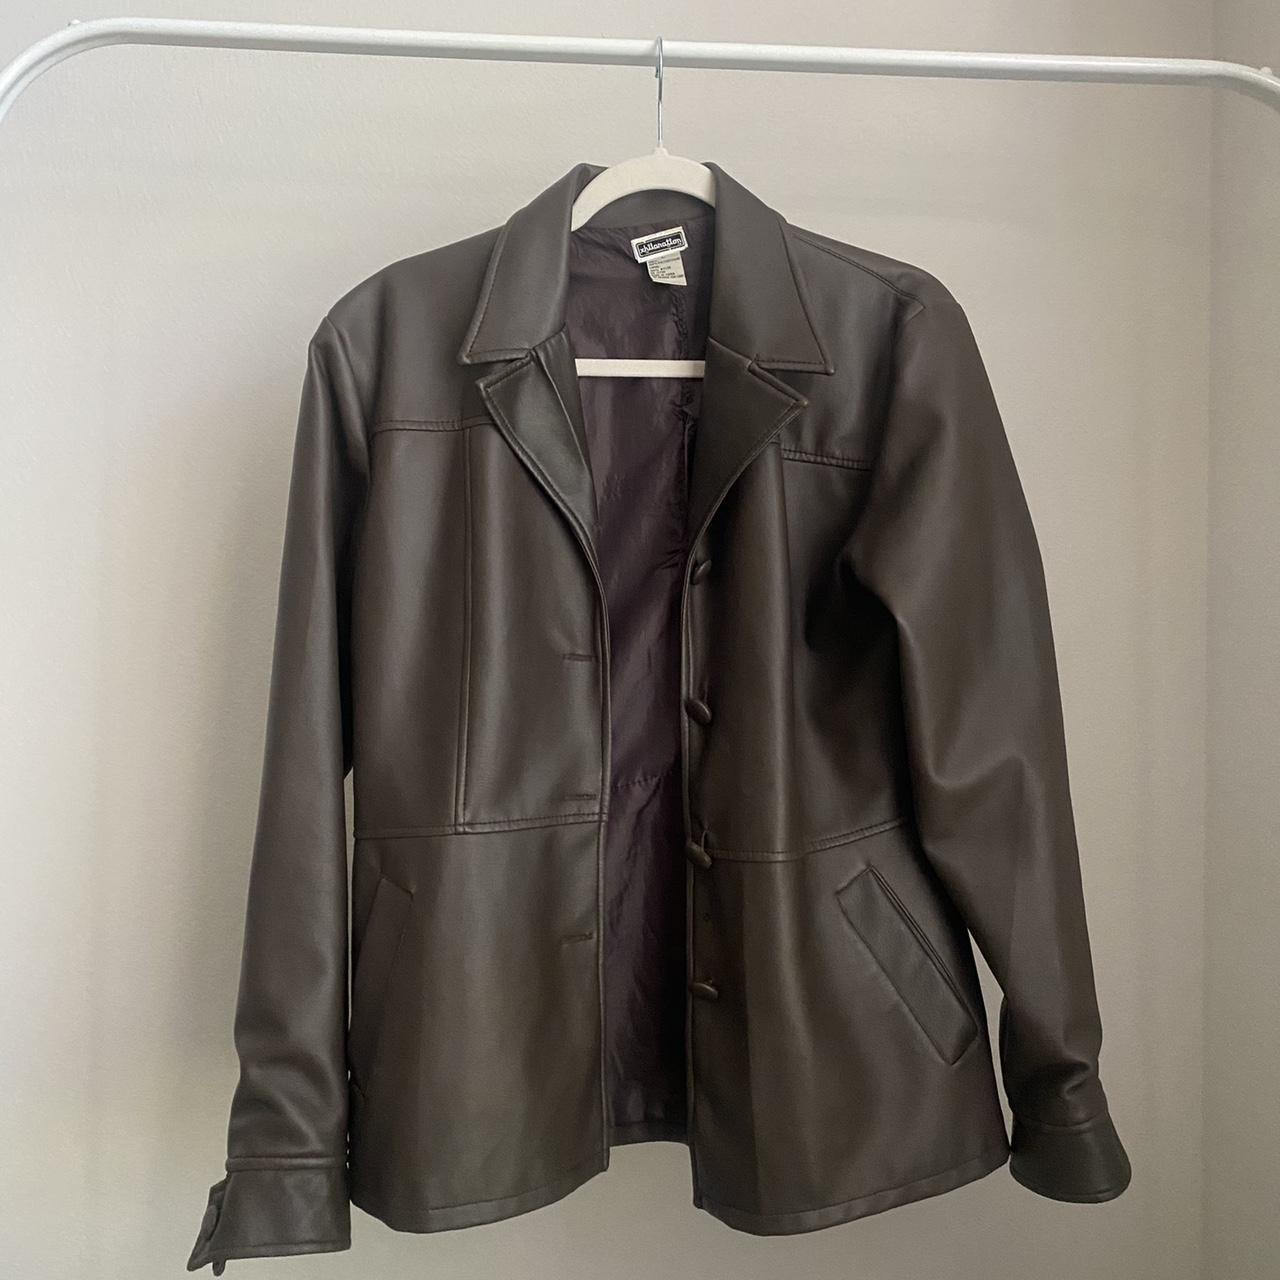 “Xhilaration” fake leather jacket size large... - Depop